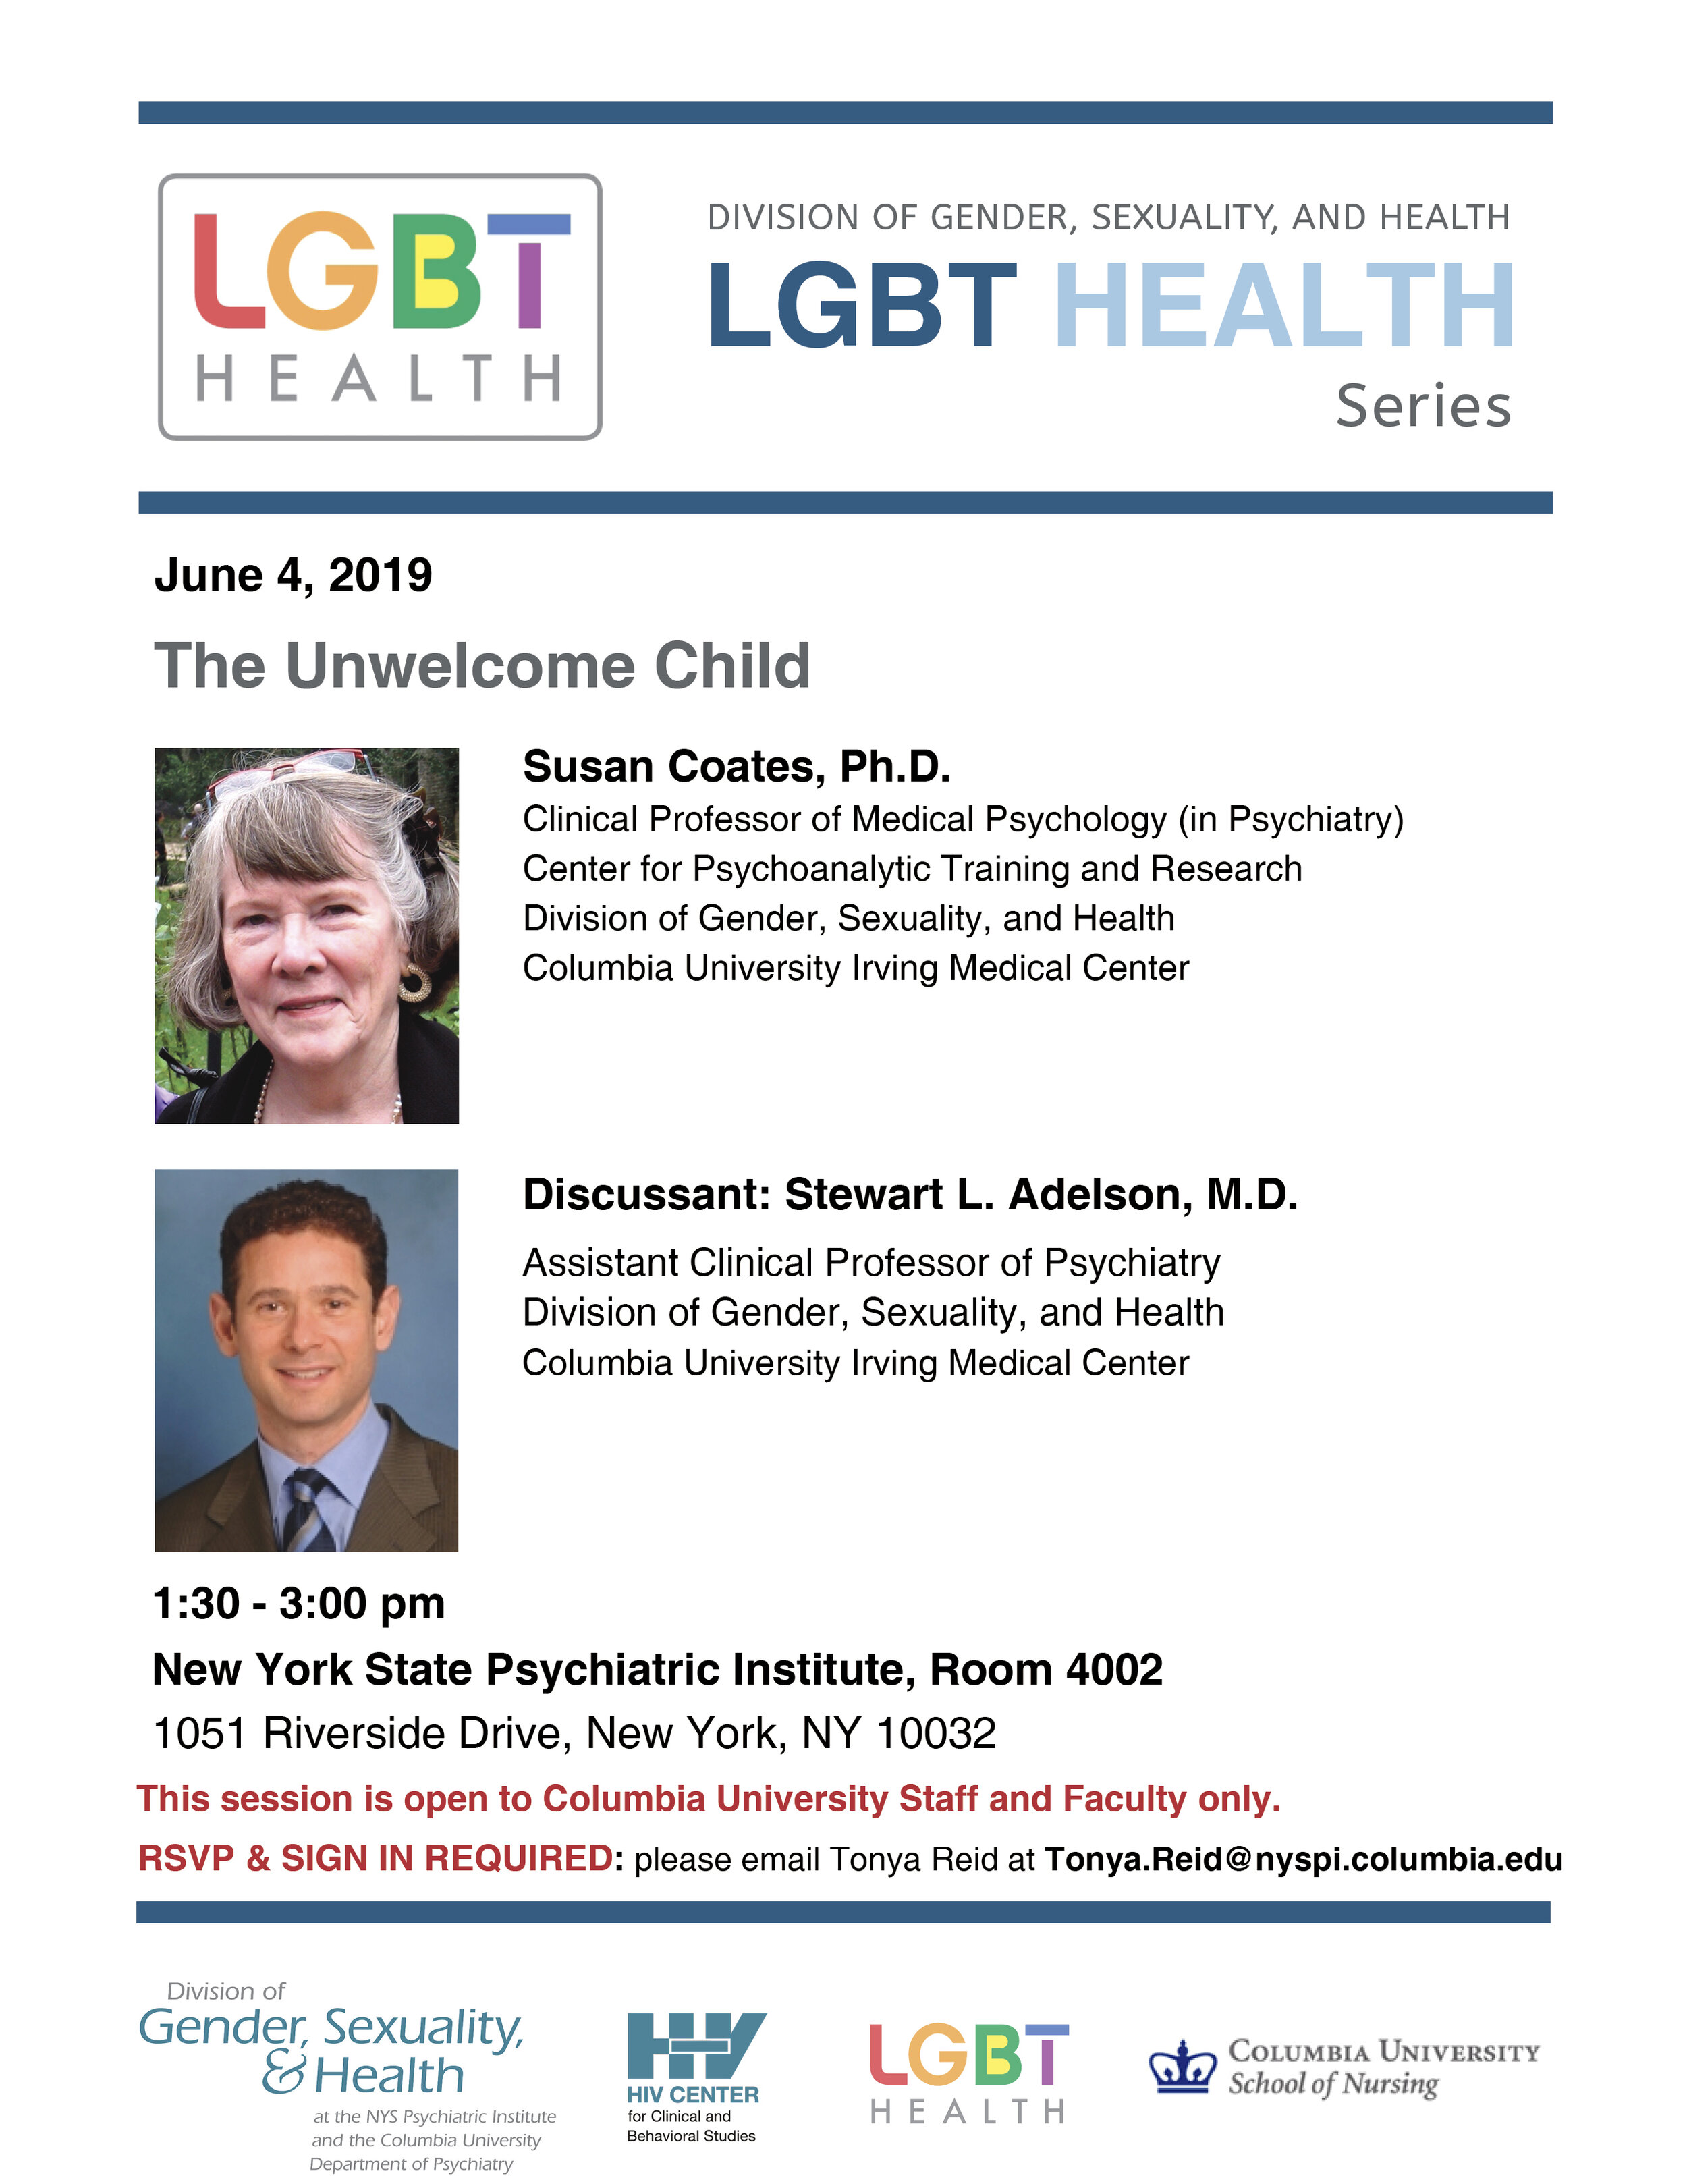 LGBT Health Series June 4 2019.jpg